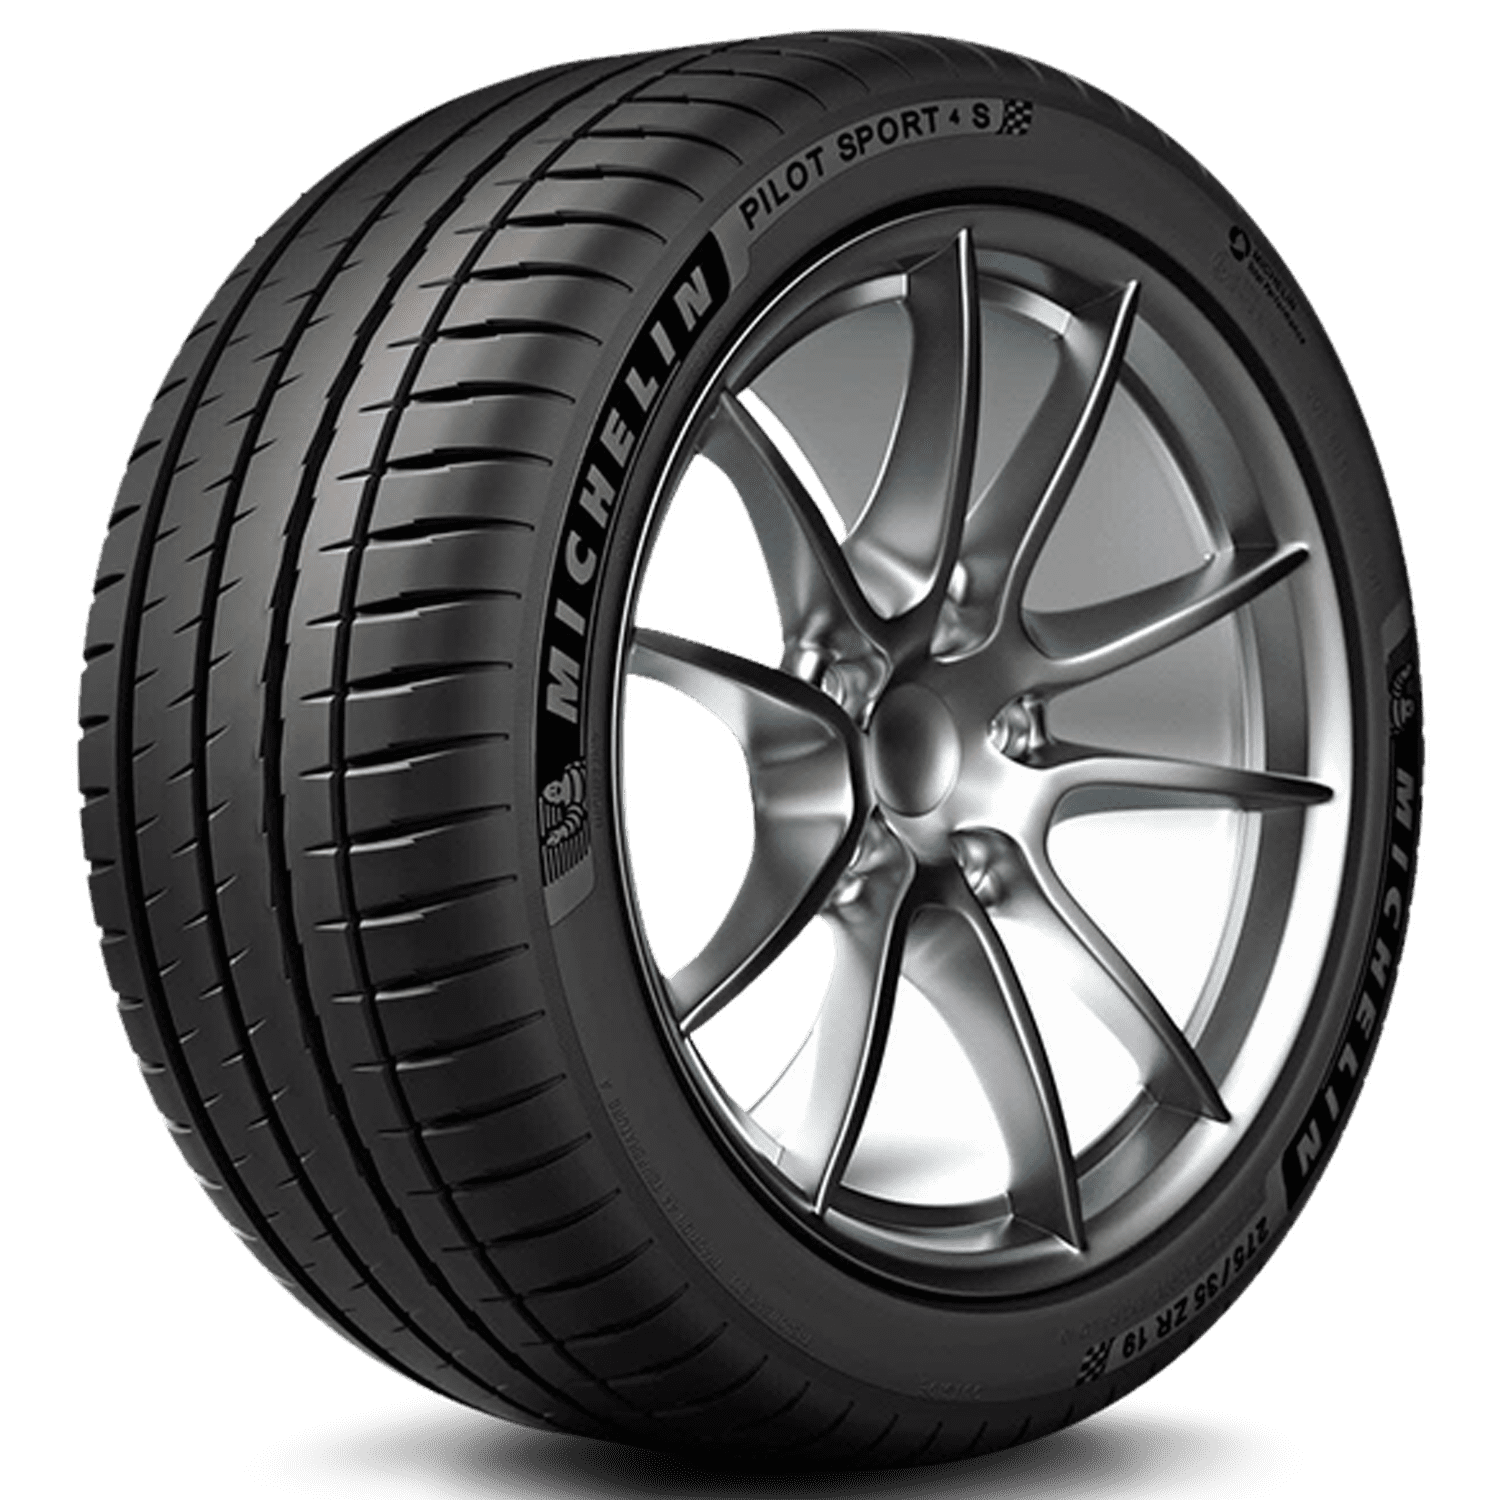 Michelin Pilot Sport 4 S 215/45-17 91 Y Tire